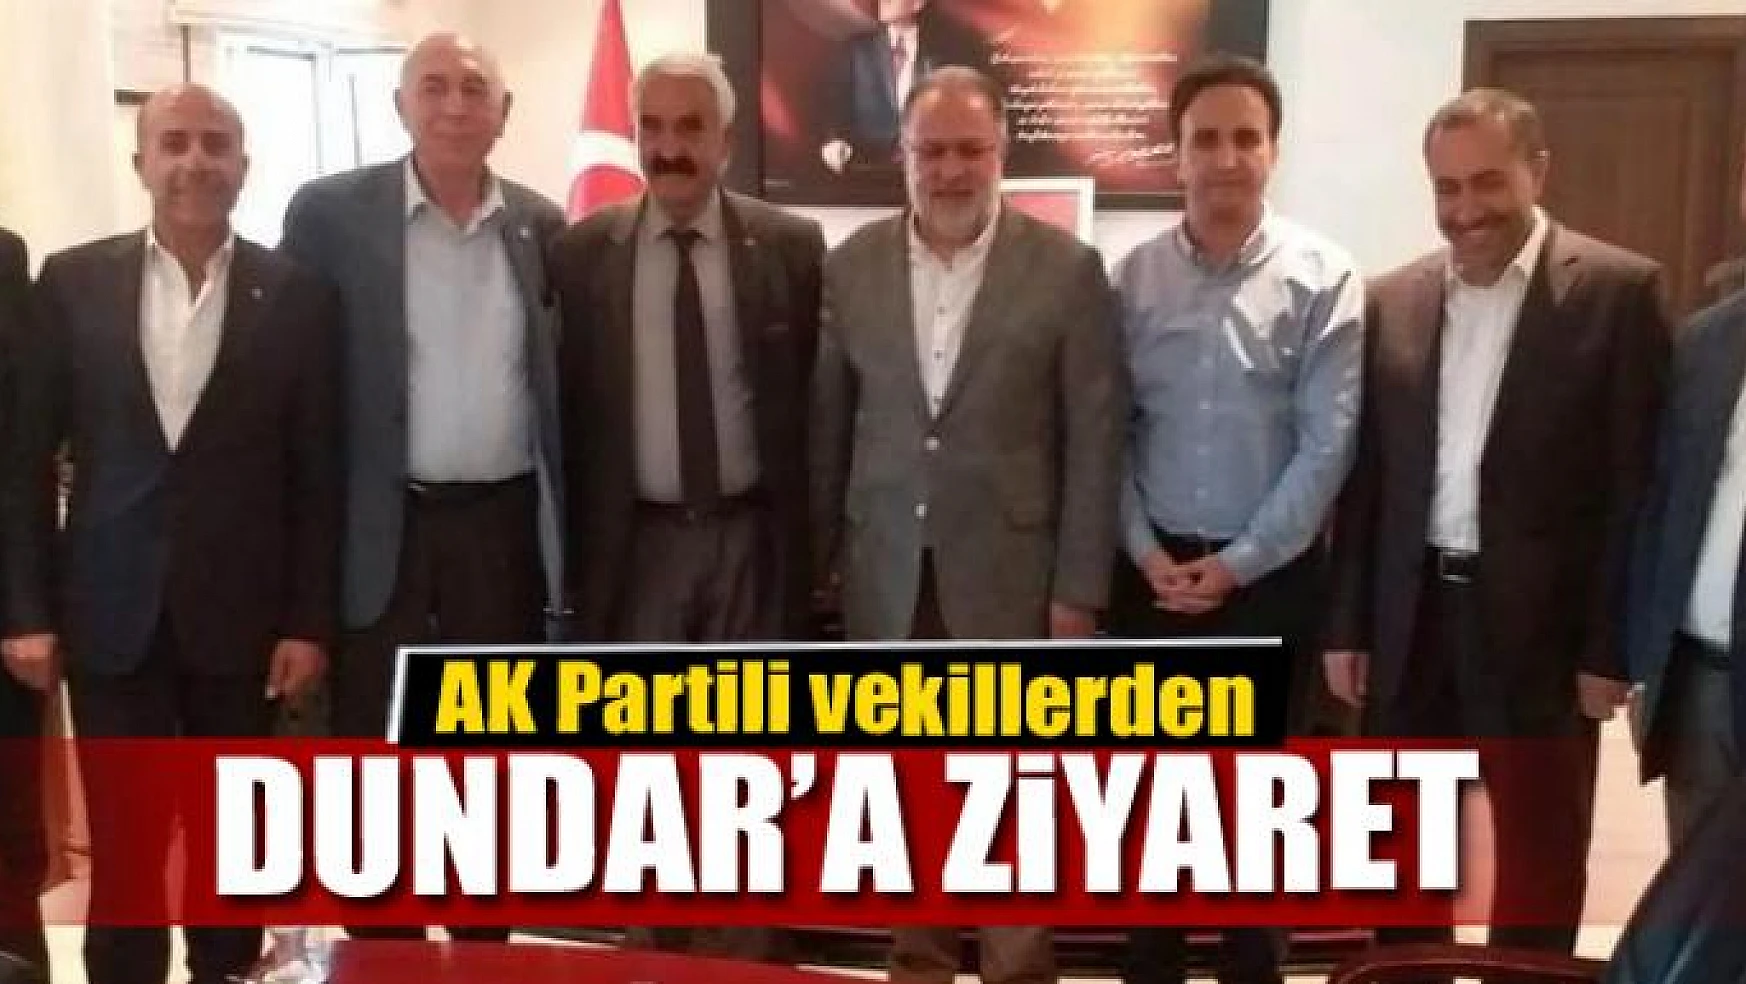 AK Partili vekillerden Kaymakam Dundar'a ziyaret 